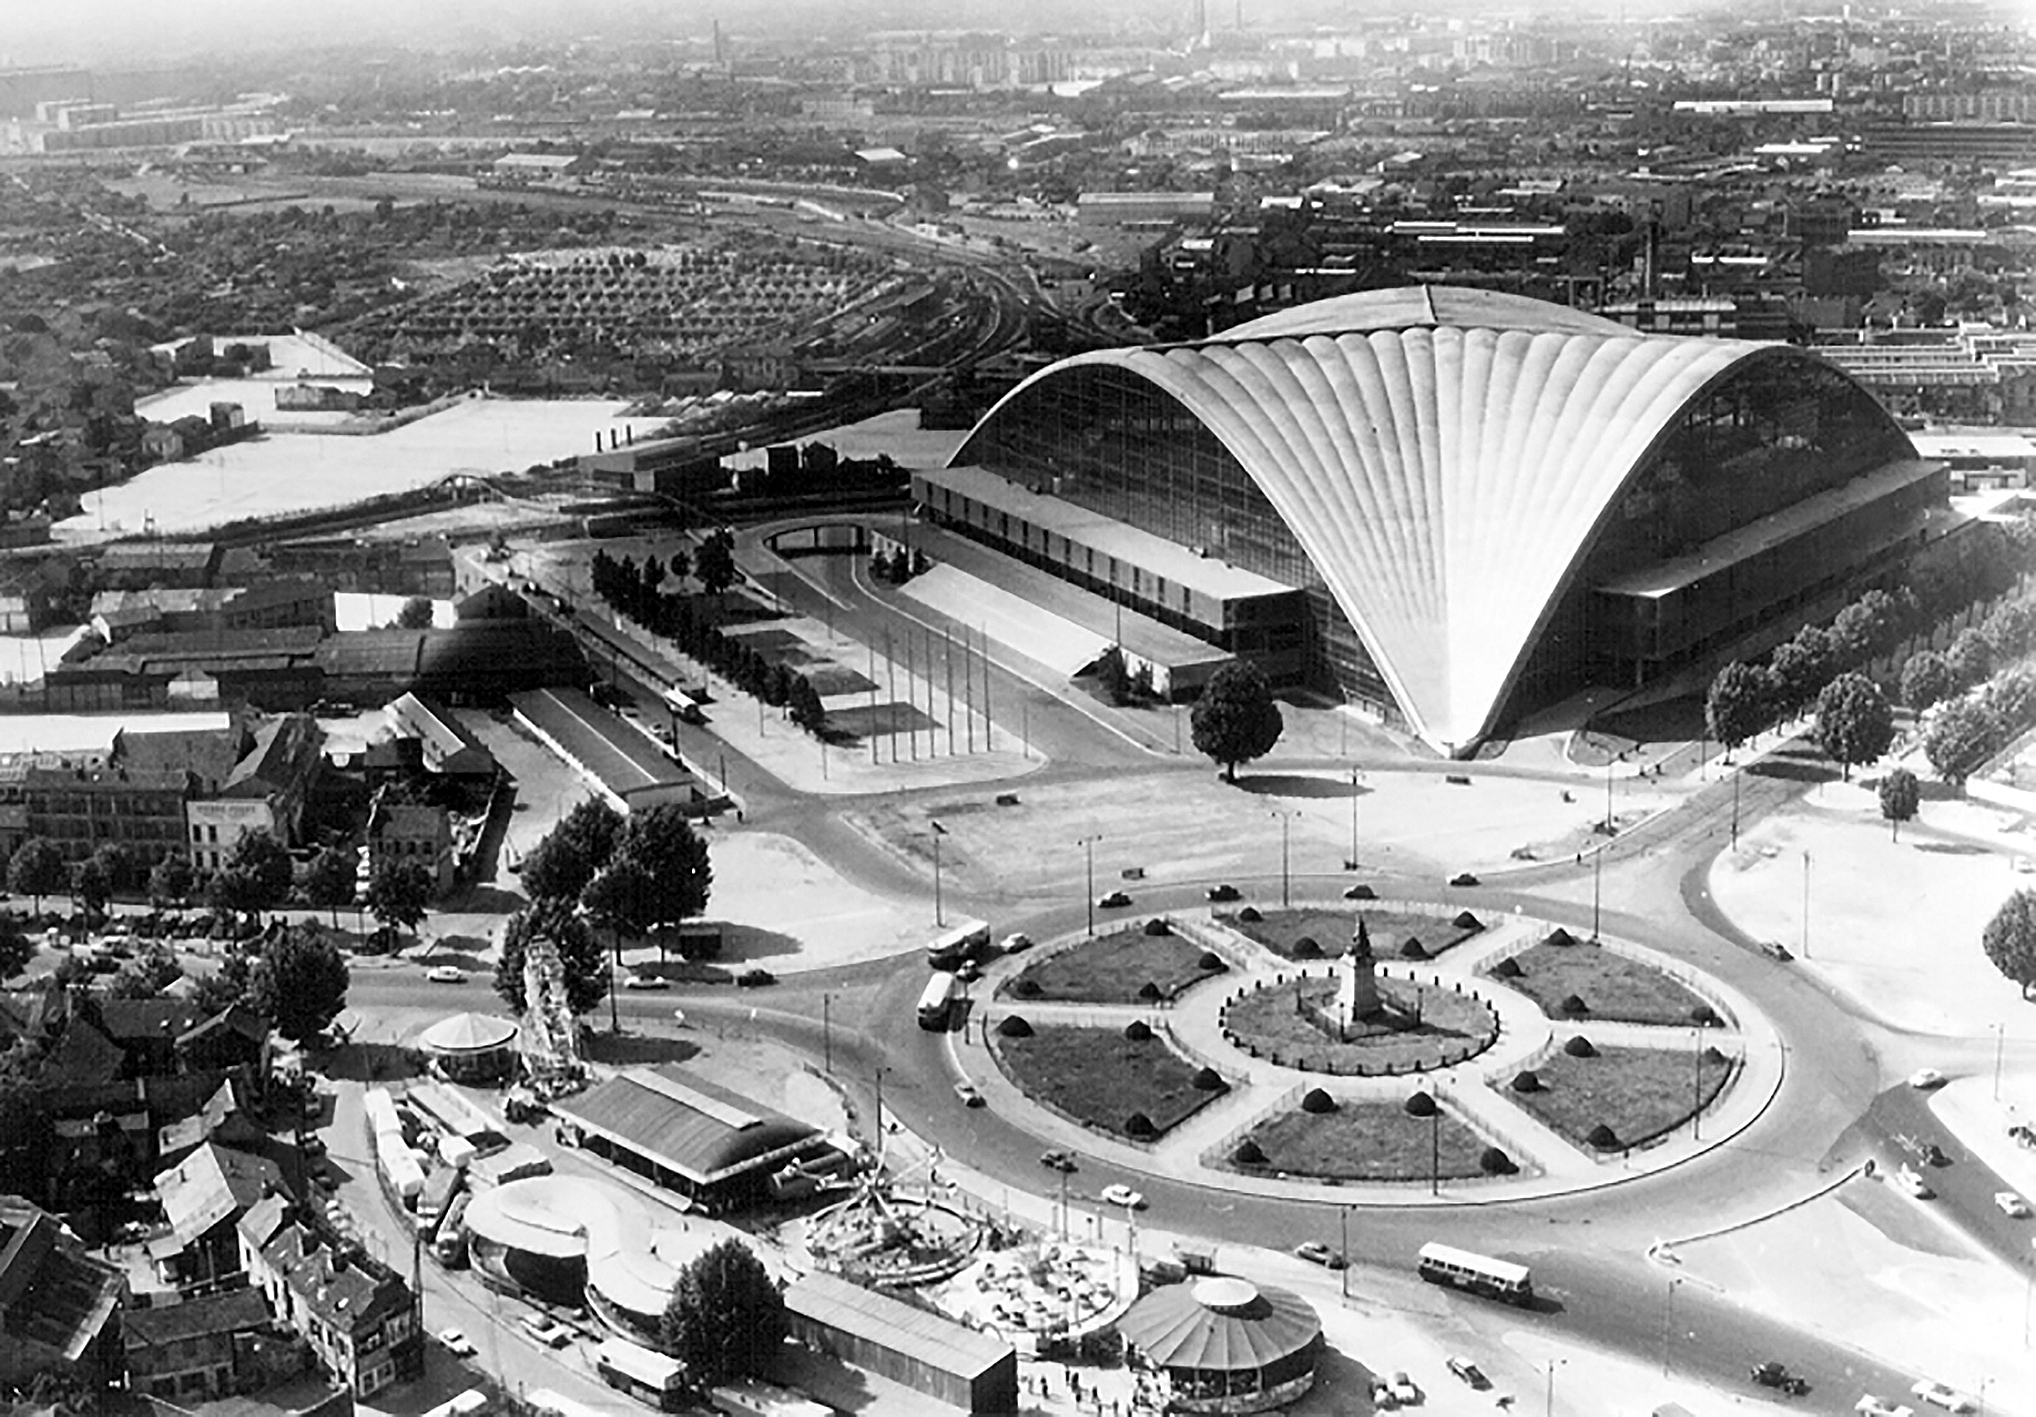 C.N.I.T., Centre national des industries et des techniques, Paris-La Défense, 1956-1958 (R. Camelot, J. de Mailly et B. H. Zehrfuss, arch.). Au centre du rond-point, une statue « La Défense de Paris, 1871 », qui donnera son nom au futur quartier d'affaires.